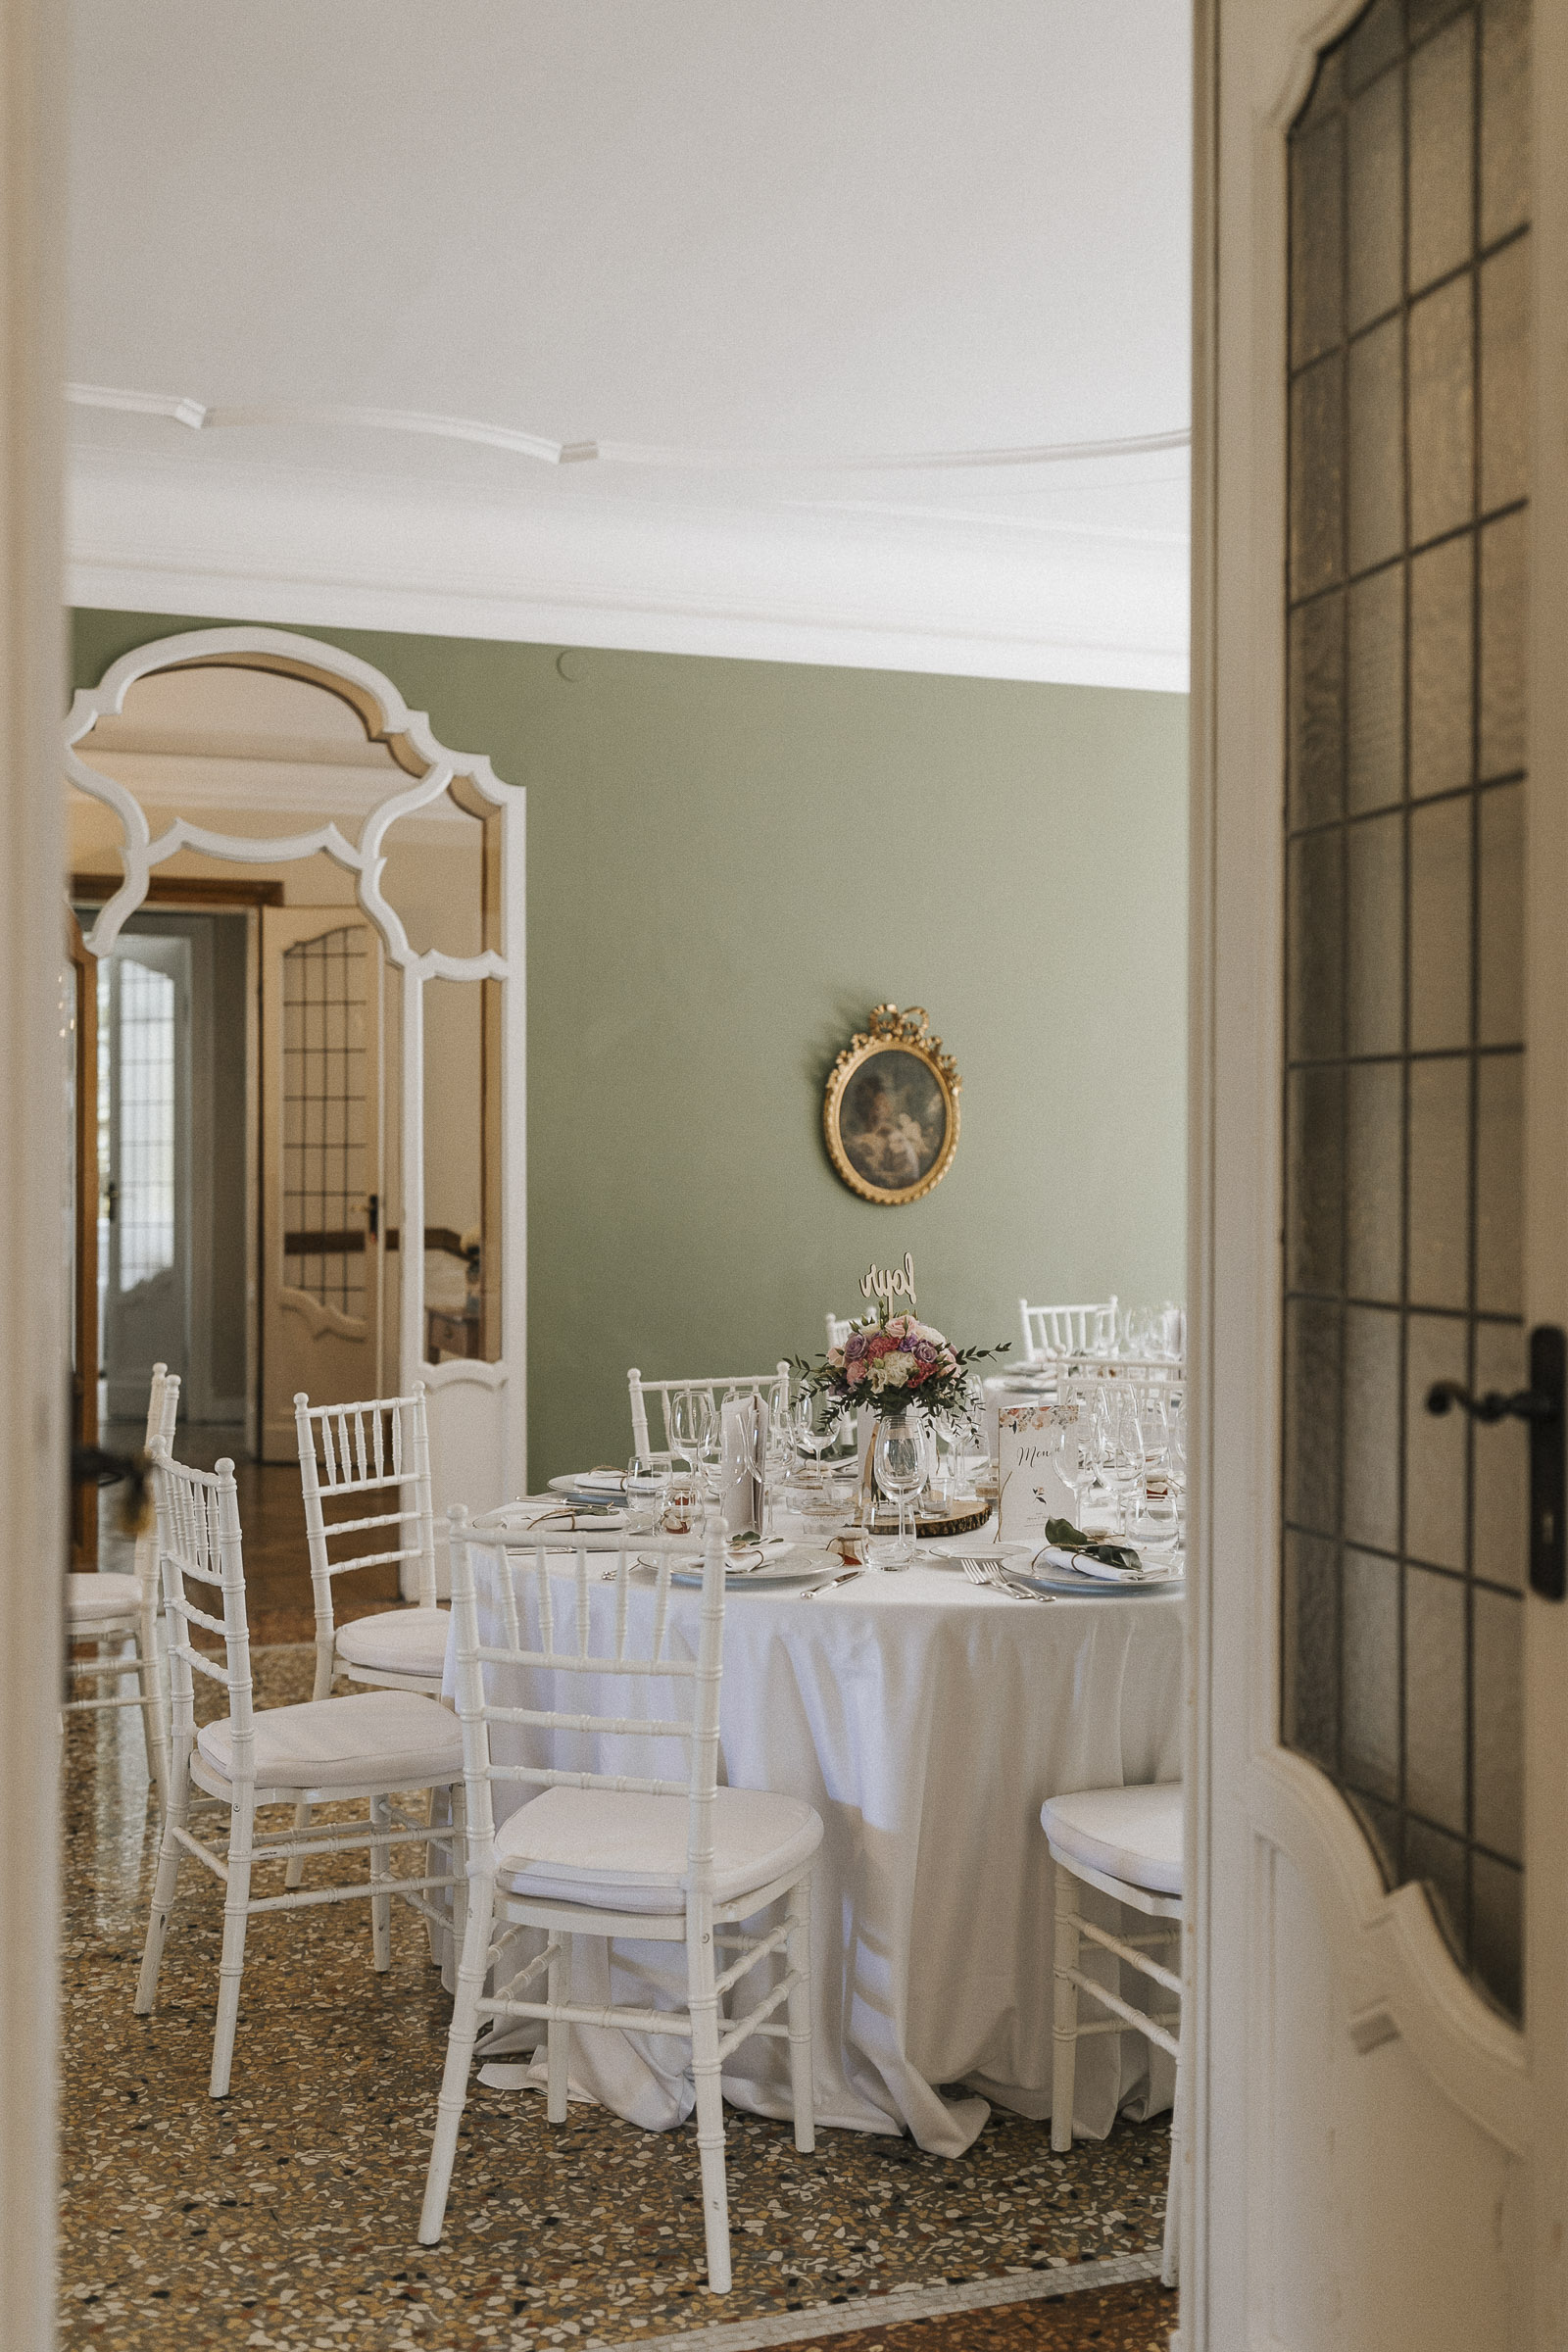 Hochzeit in Italien: Blick durch eine offen stehende Tür auf die dekorierten Tische